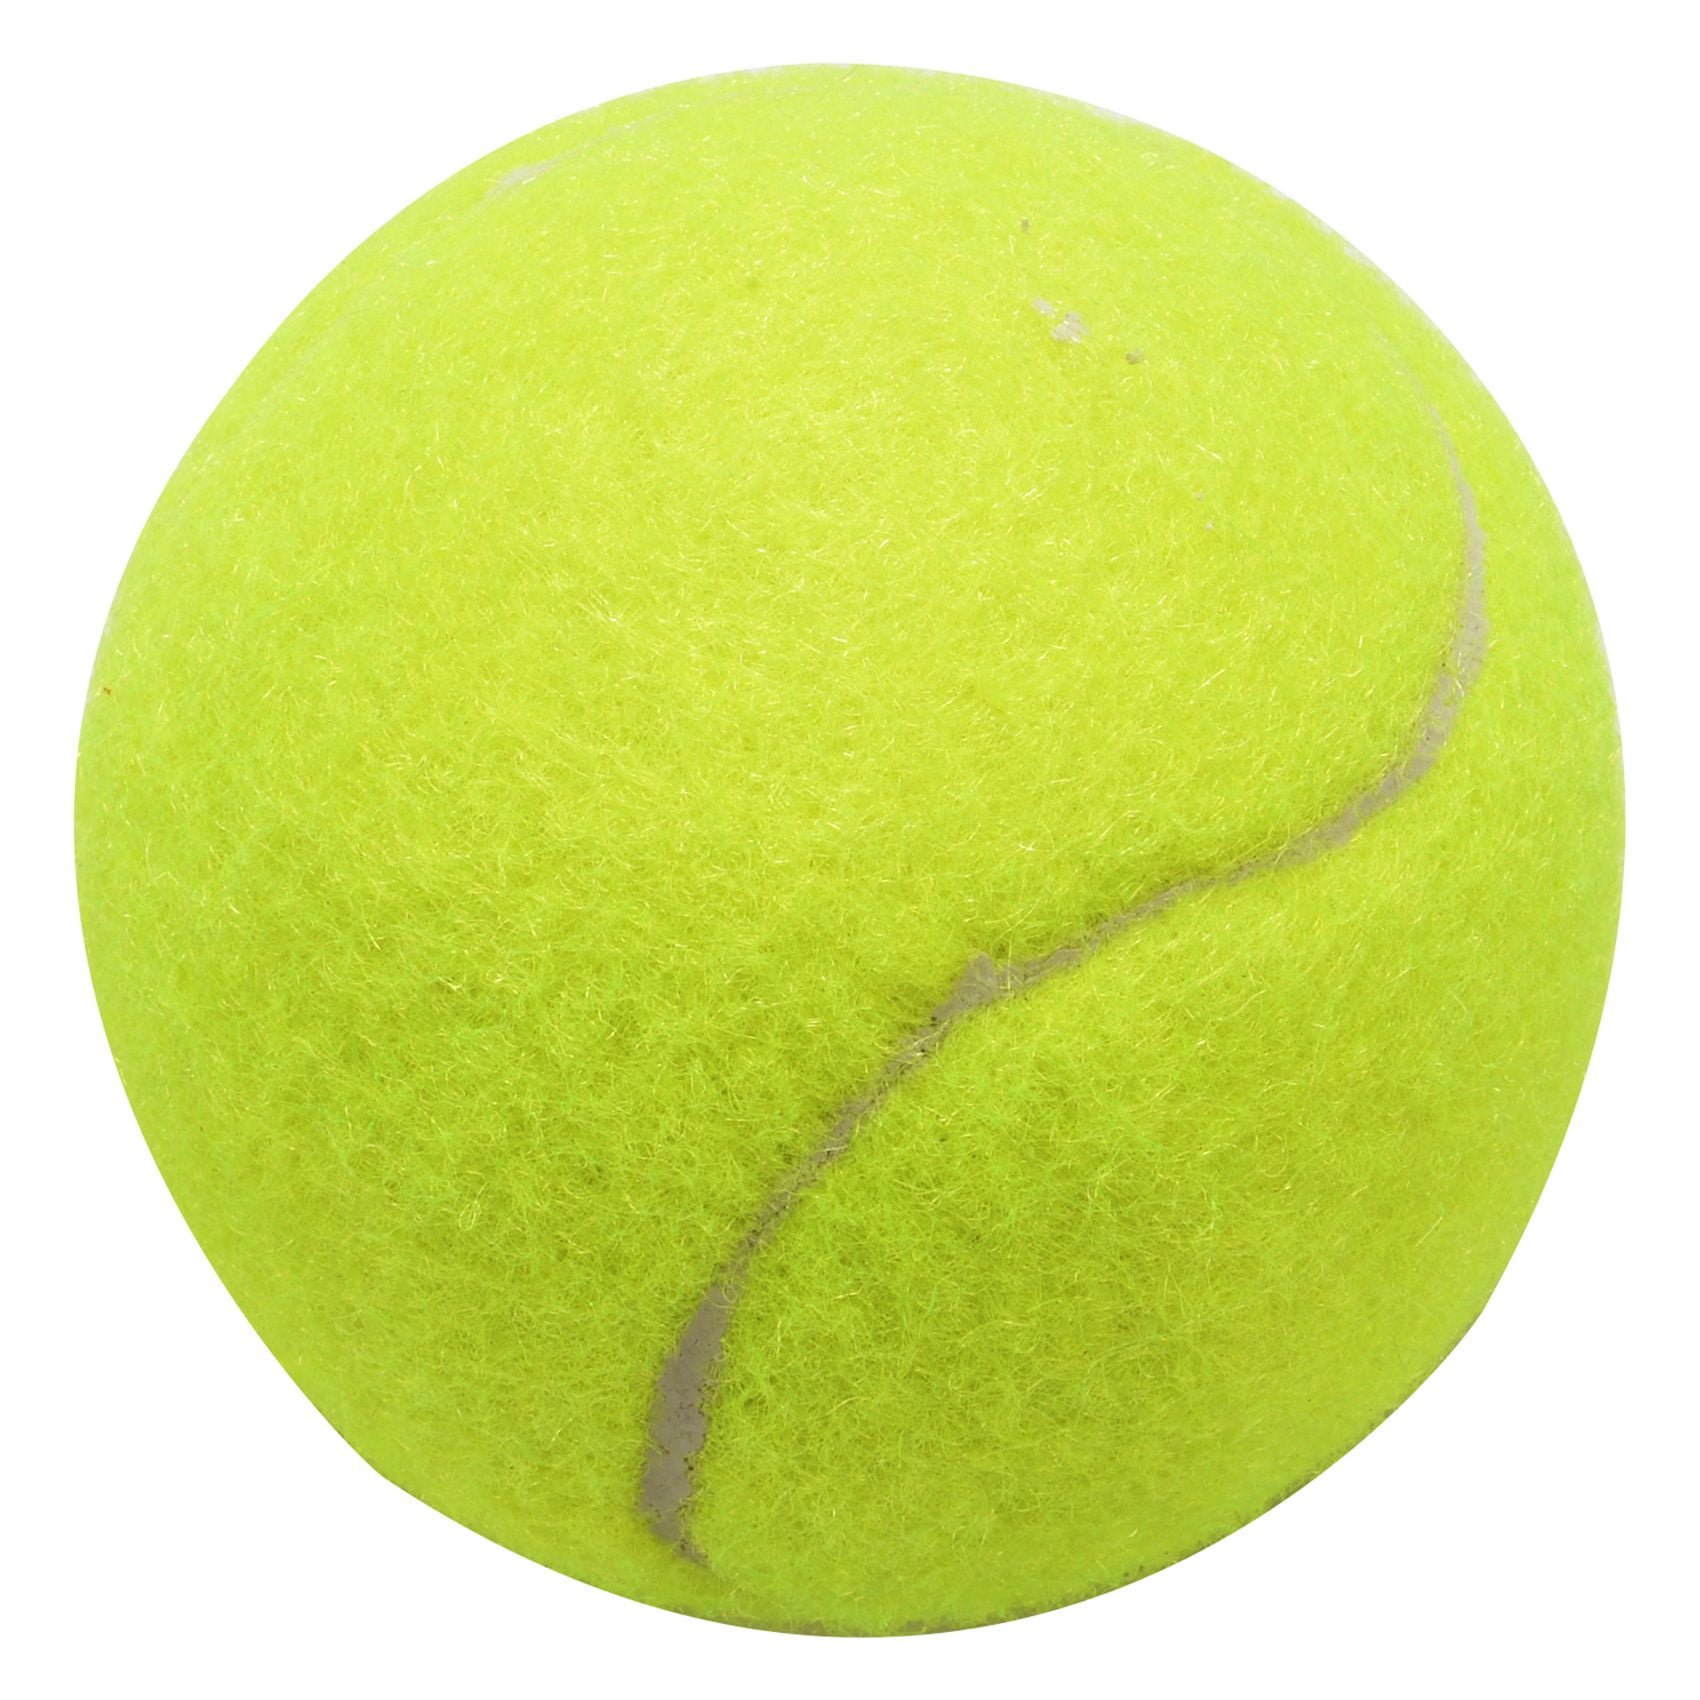 16x Tennis Balls Wilson Championship Brand Bulk Lot Can Sports Ball Outdoor NEW 